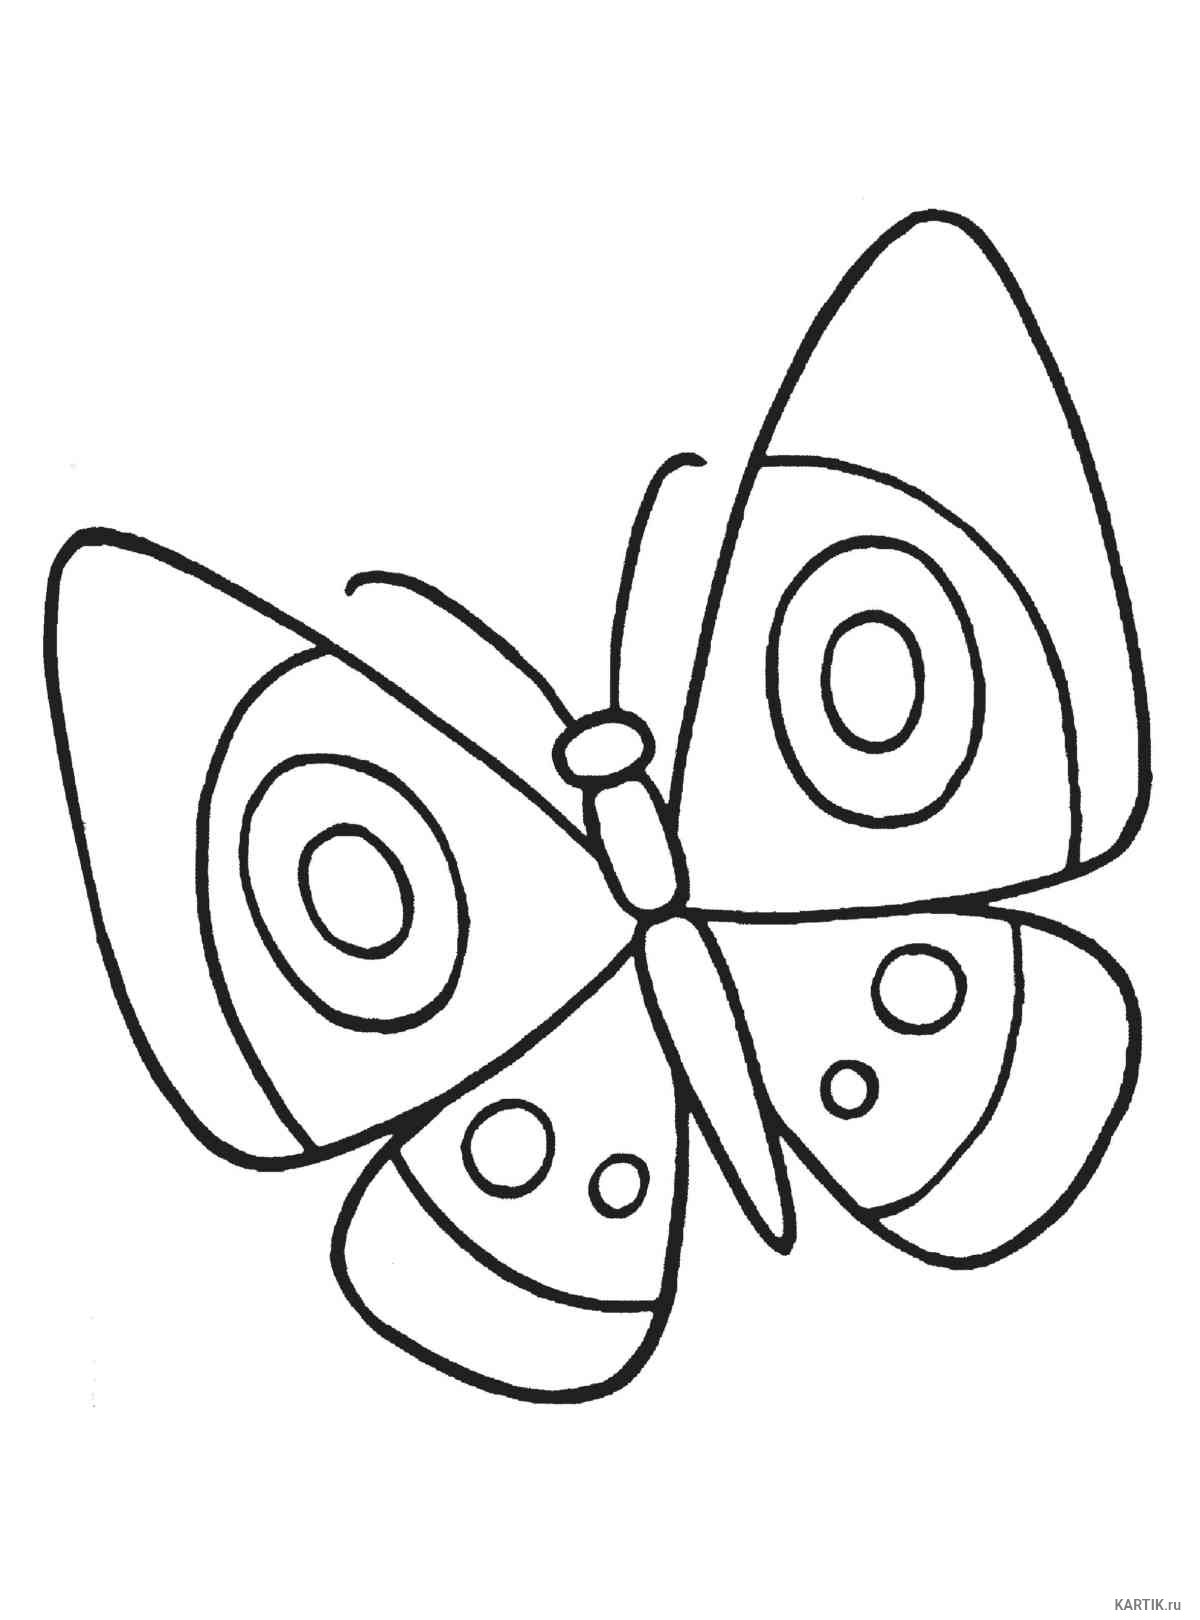 Простые рисунки для детей. Бабочка раскраска для детей. Бабочка раскраска для малышей. Детские раскраски бабочки. Бабочка карандашом для детей.